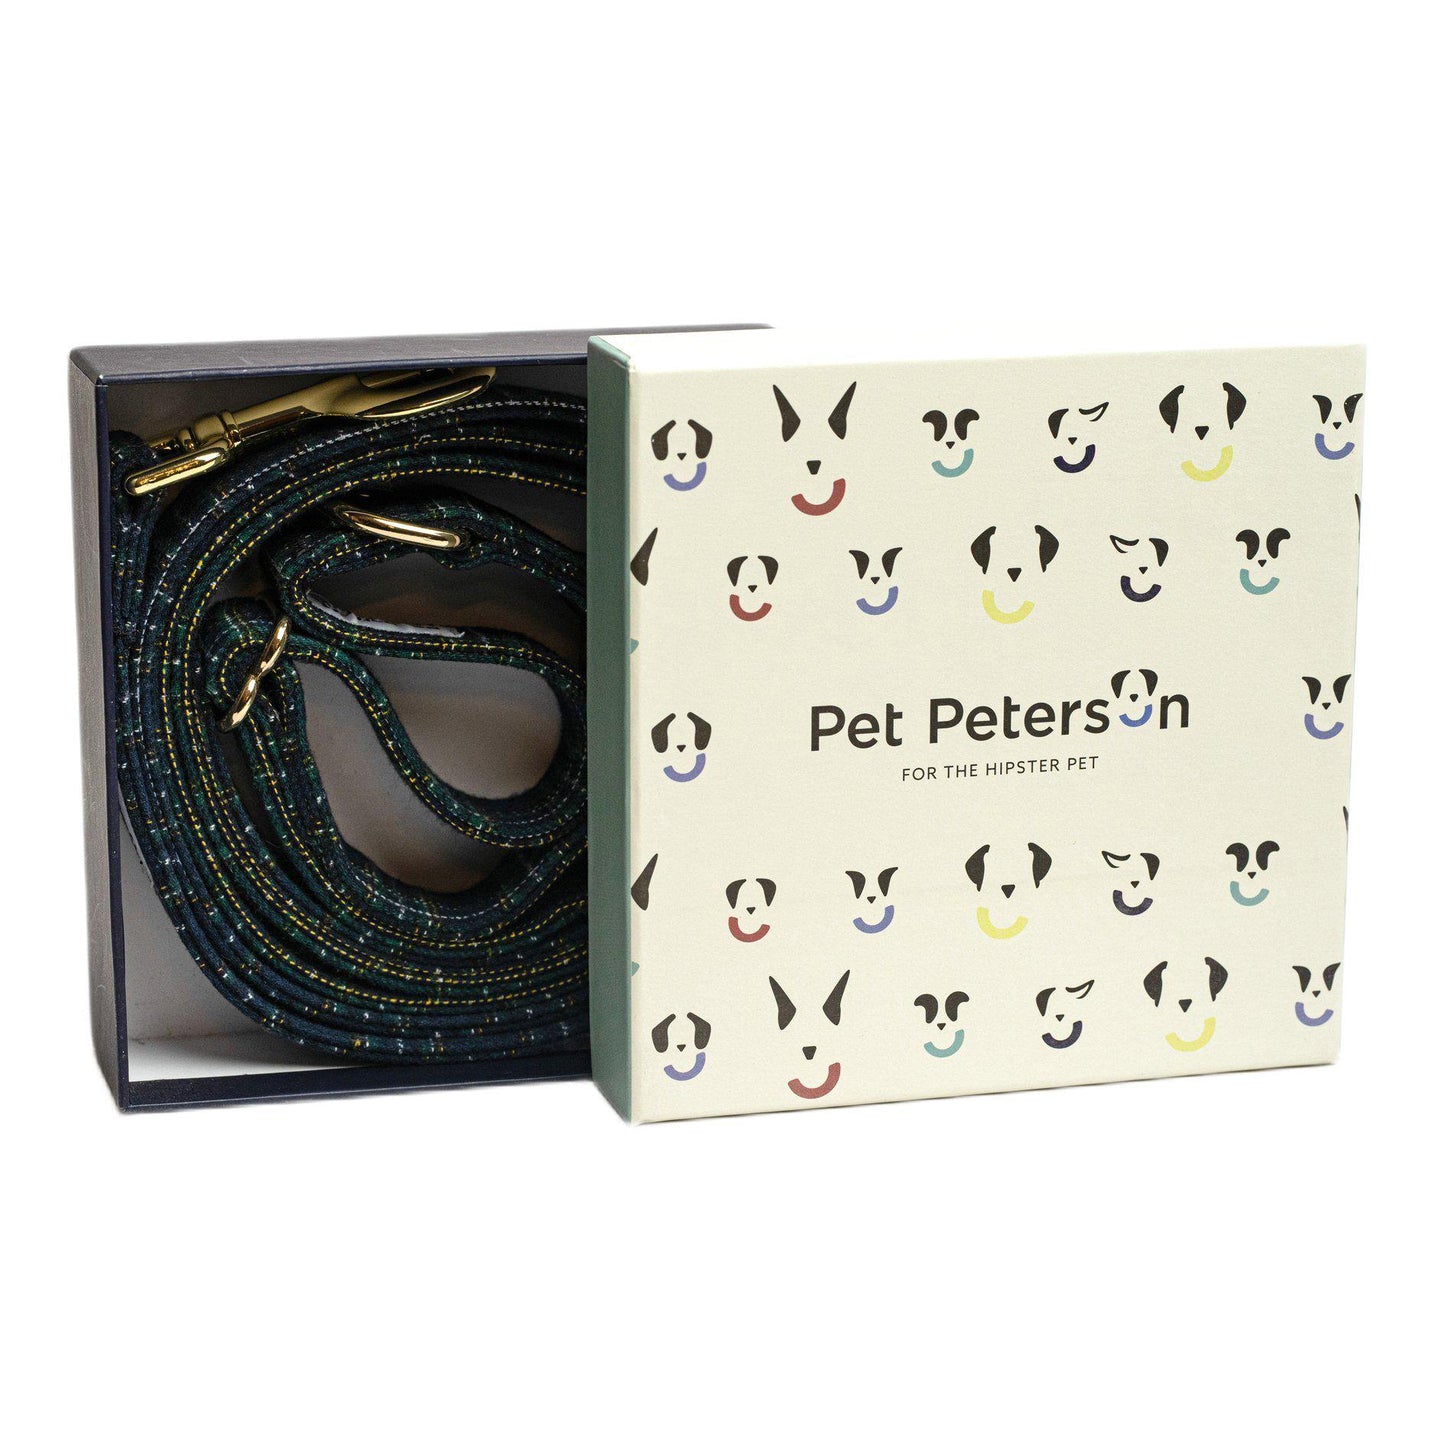 Pet Peterson set - Oxford - Tienda online collares y accesorios de diseño para perros Dog Models - Pet Peterson